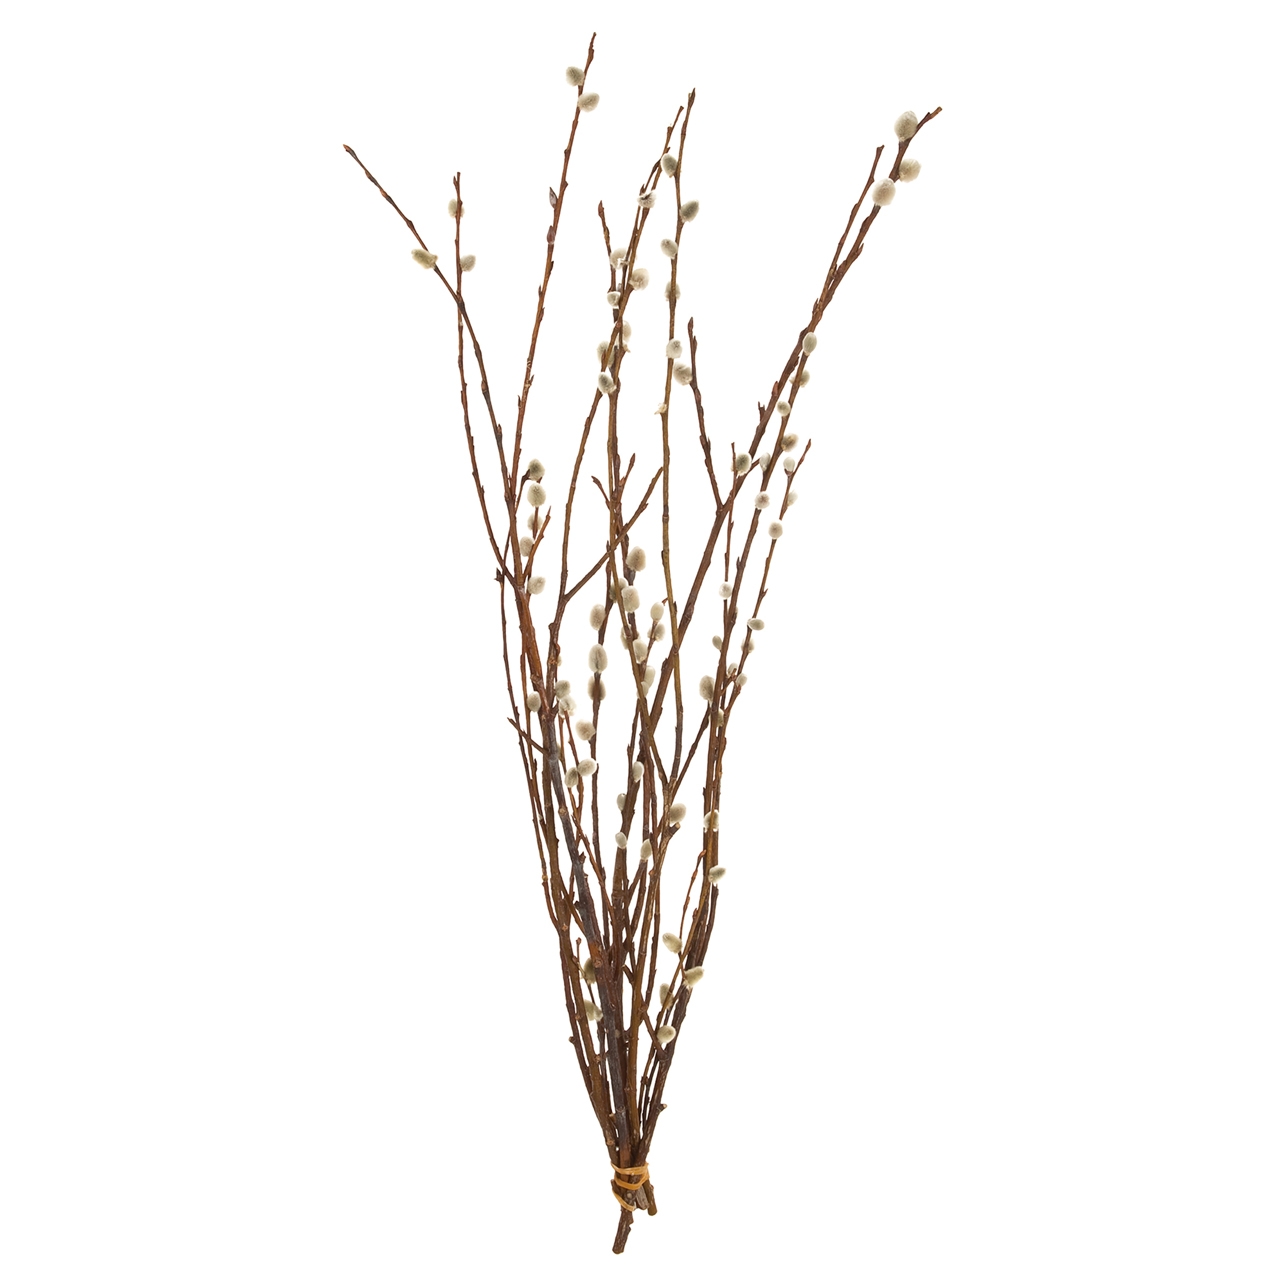 マイフラ 通販 ネコヤナギ 小 ドライフラワー 枝もの Fd0004 ナチュラルドライ 長さ 約60cm ドライフラワー ナチュラル素材 全国にmagiq 花器 花資材などをお届けします